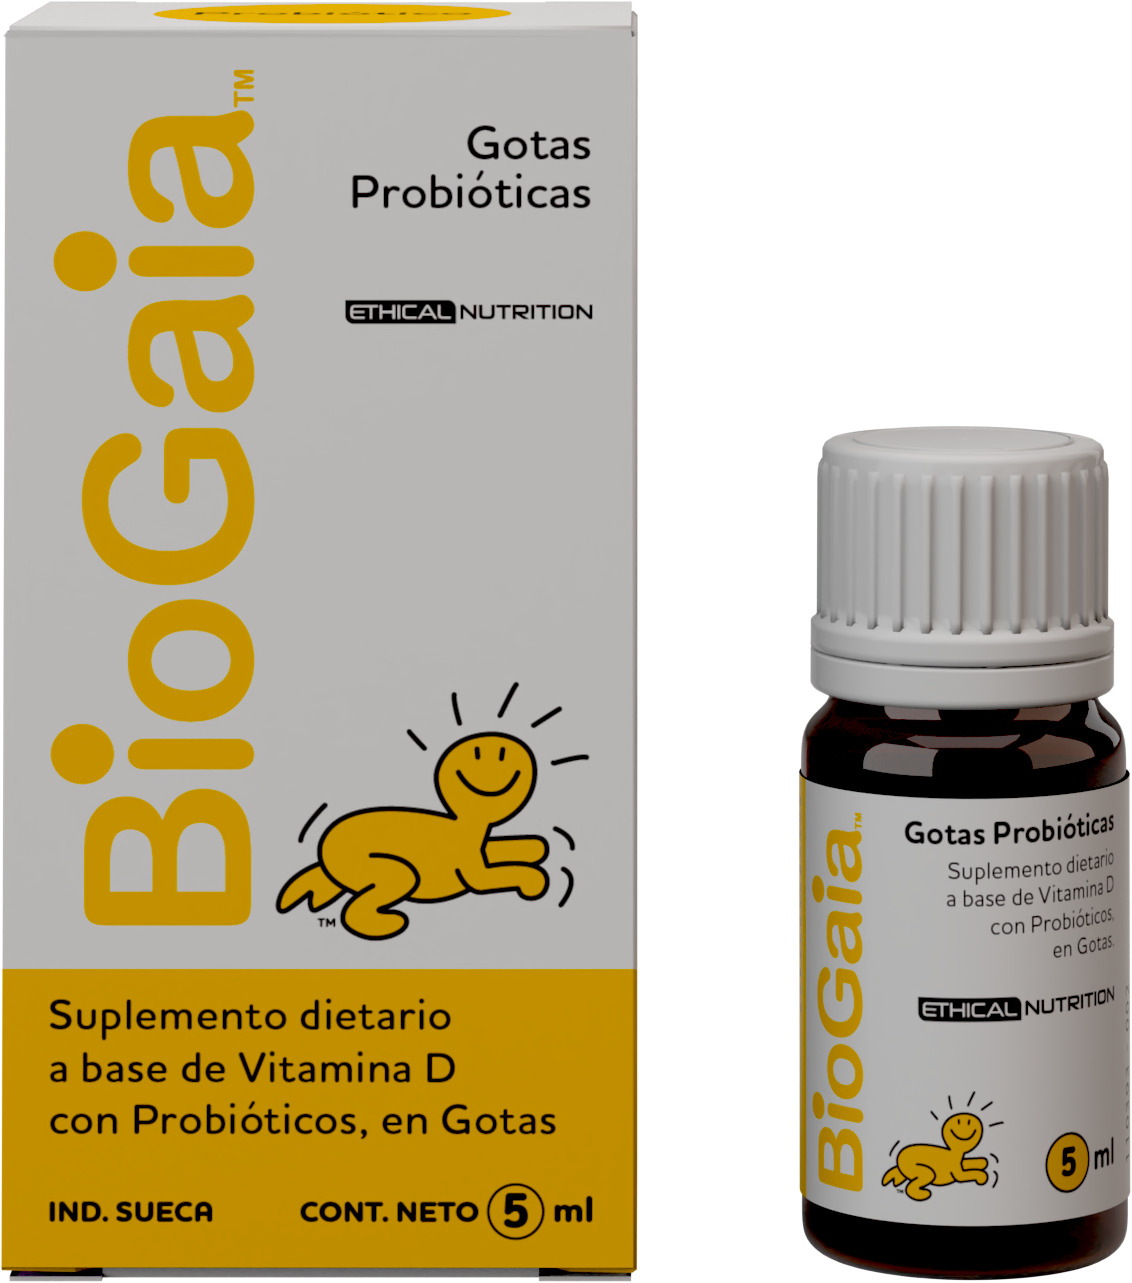 BioGaia Guatemala - BioGaia Gotas puede combinarse en la leche de tu bebé,  utilizando una cuchara que no sea de metal o aplicando las gotas  directamente en tu pecho.